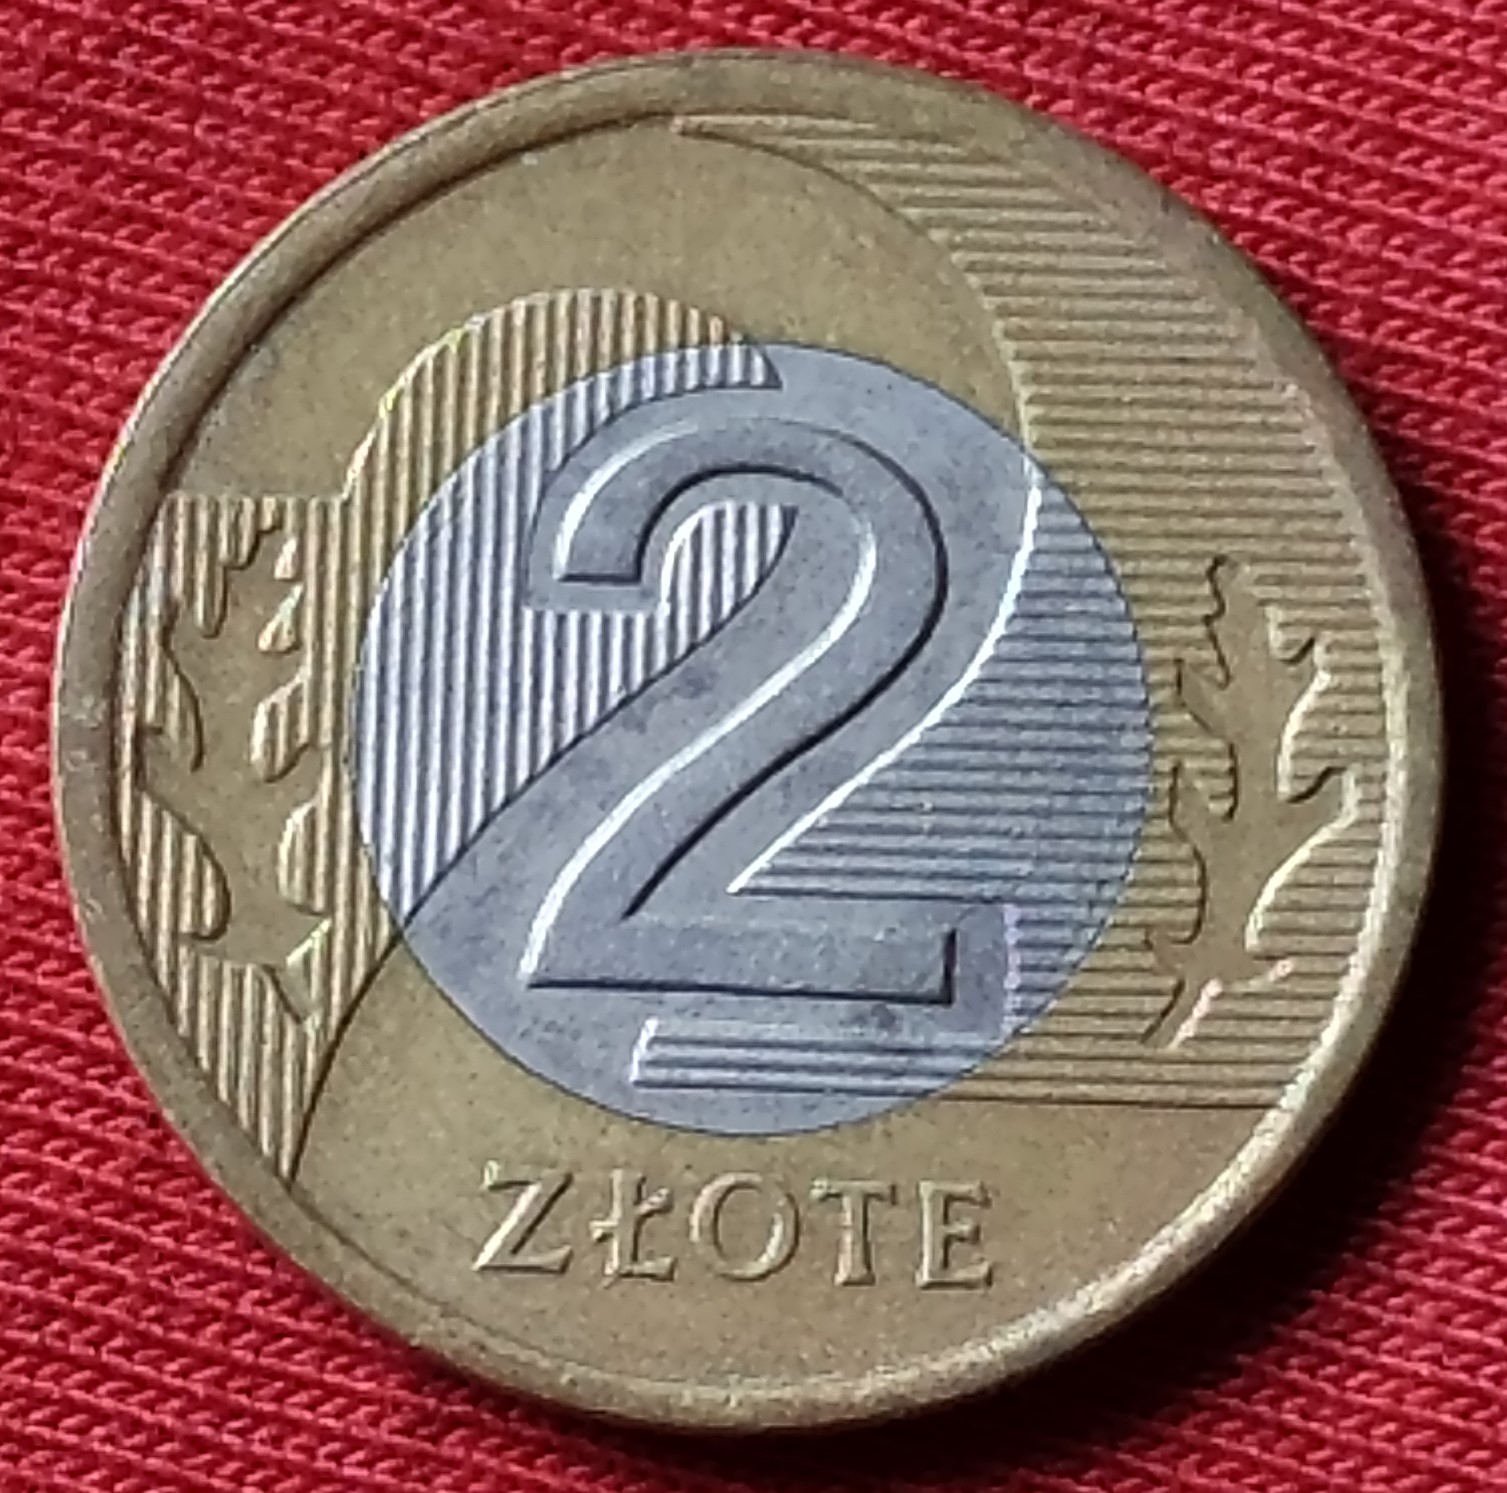 1995 Poland 2 Zlote Bimetallic 